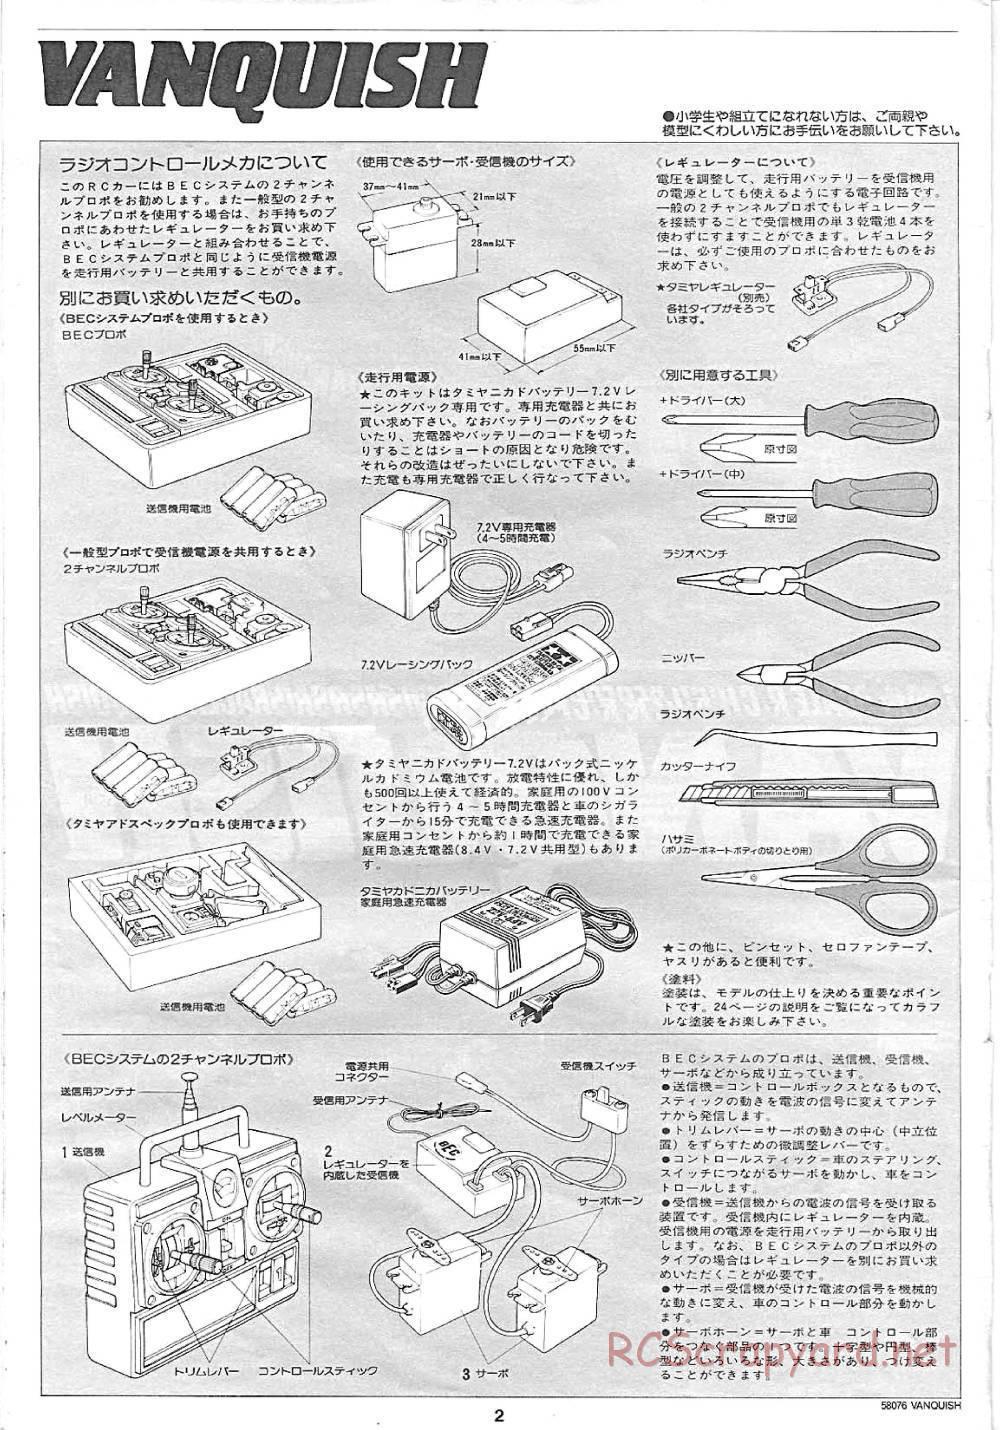 Tamiya - Vanquish - 58076 - Manual - Page 2